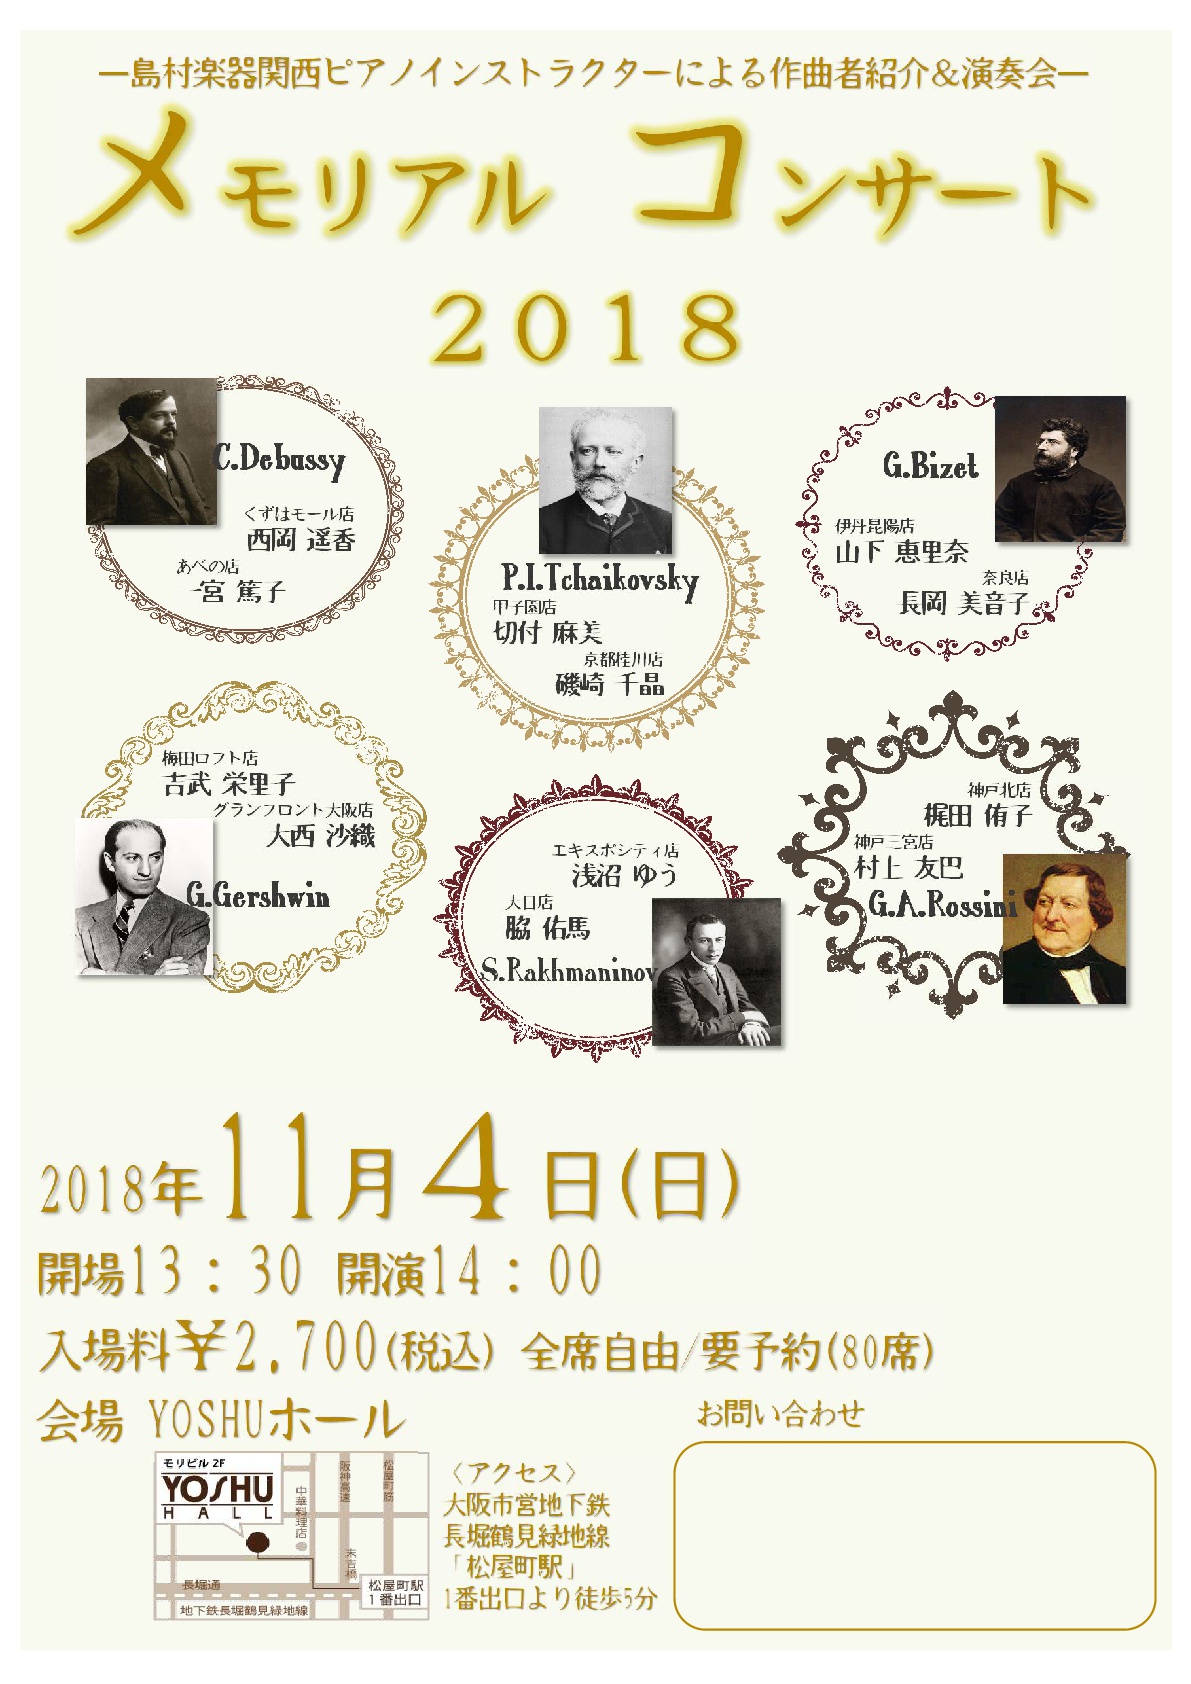 関西エリアピアノインストラクター夢の競演「メモリアルコンサート2018」